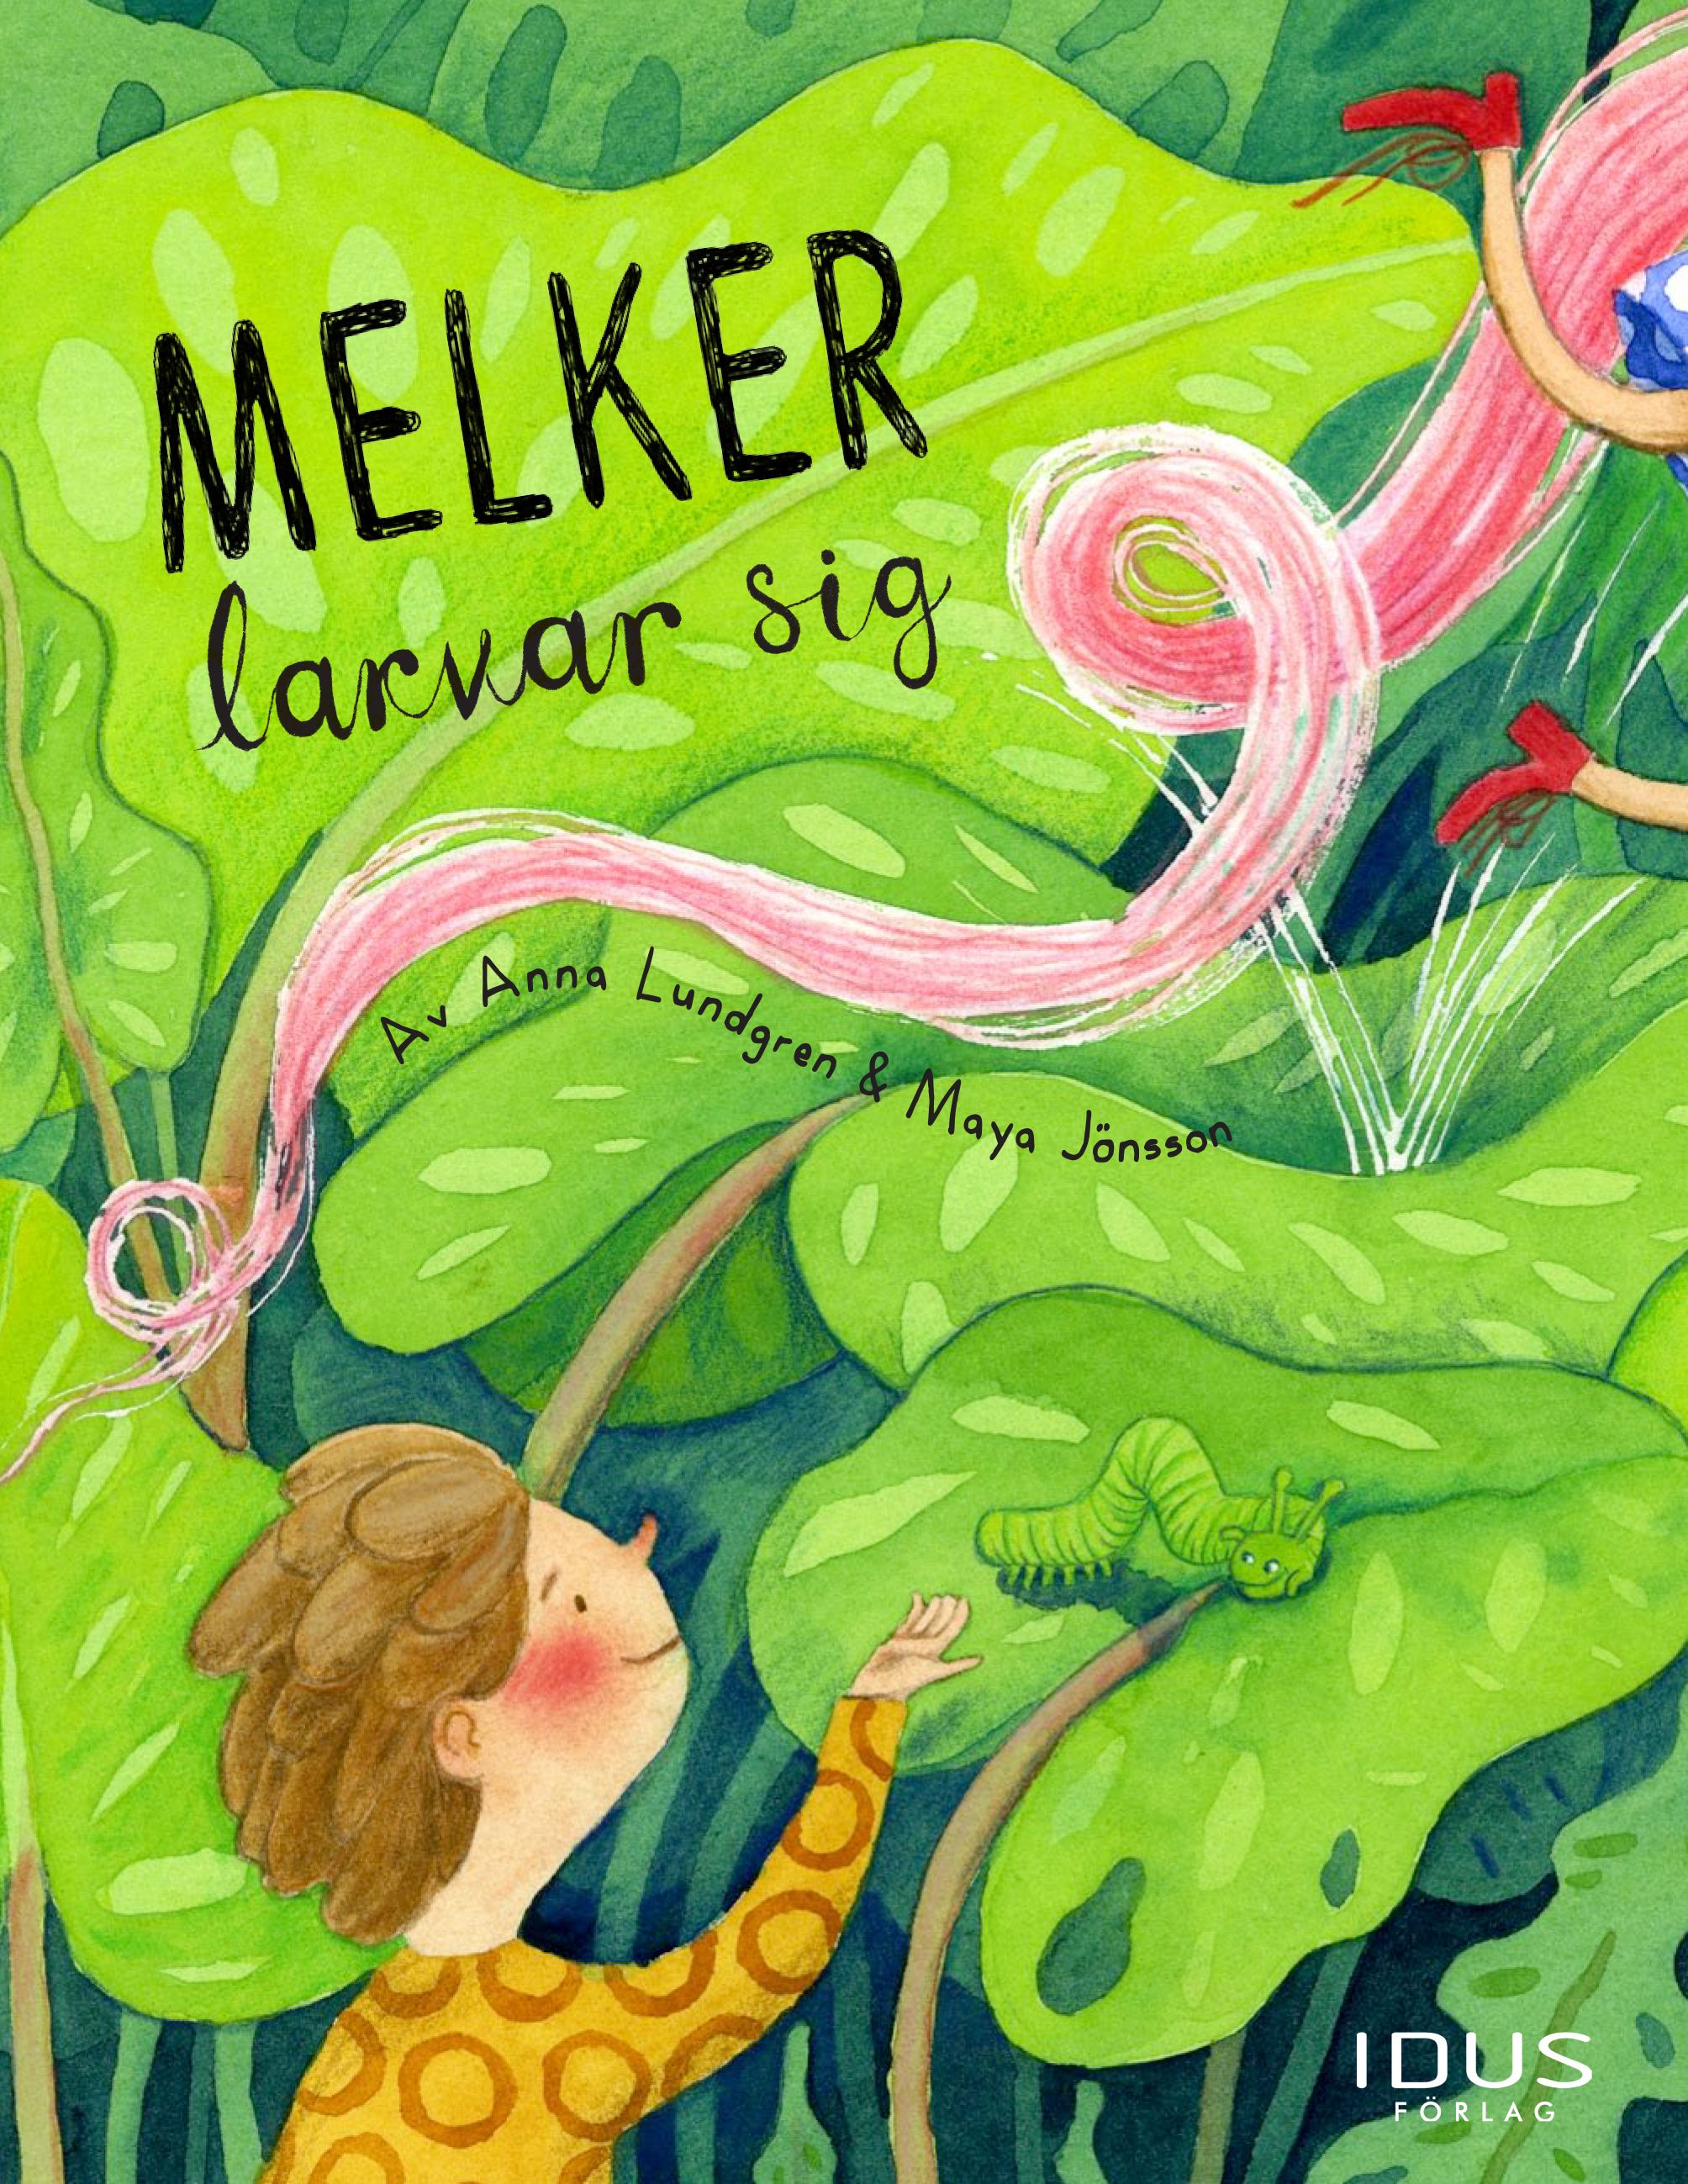 Melker larvar sig, e-bog af Maya Jönsson, Anna Lundgren